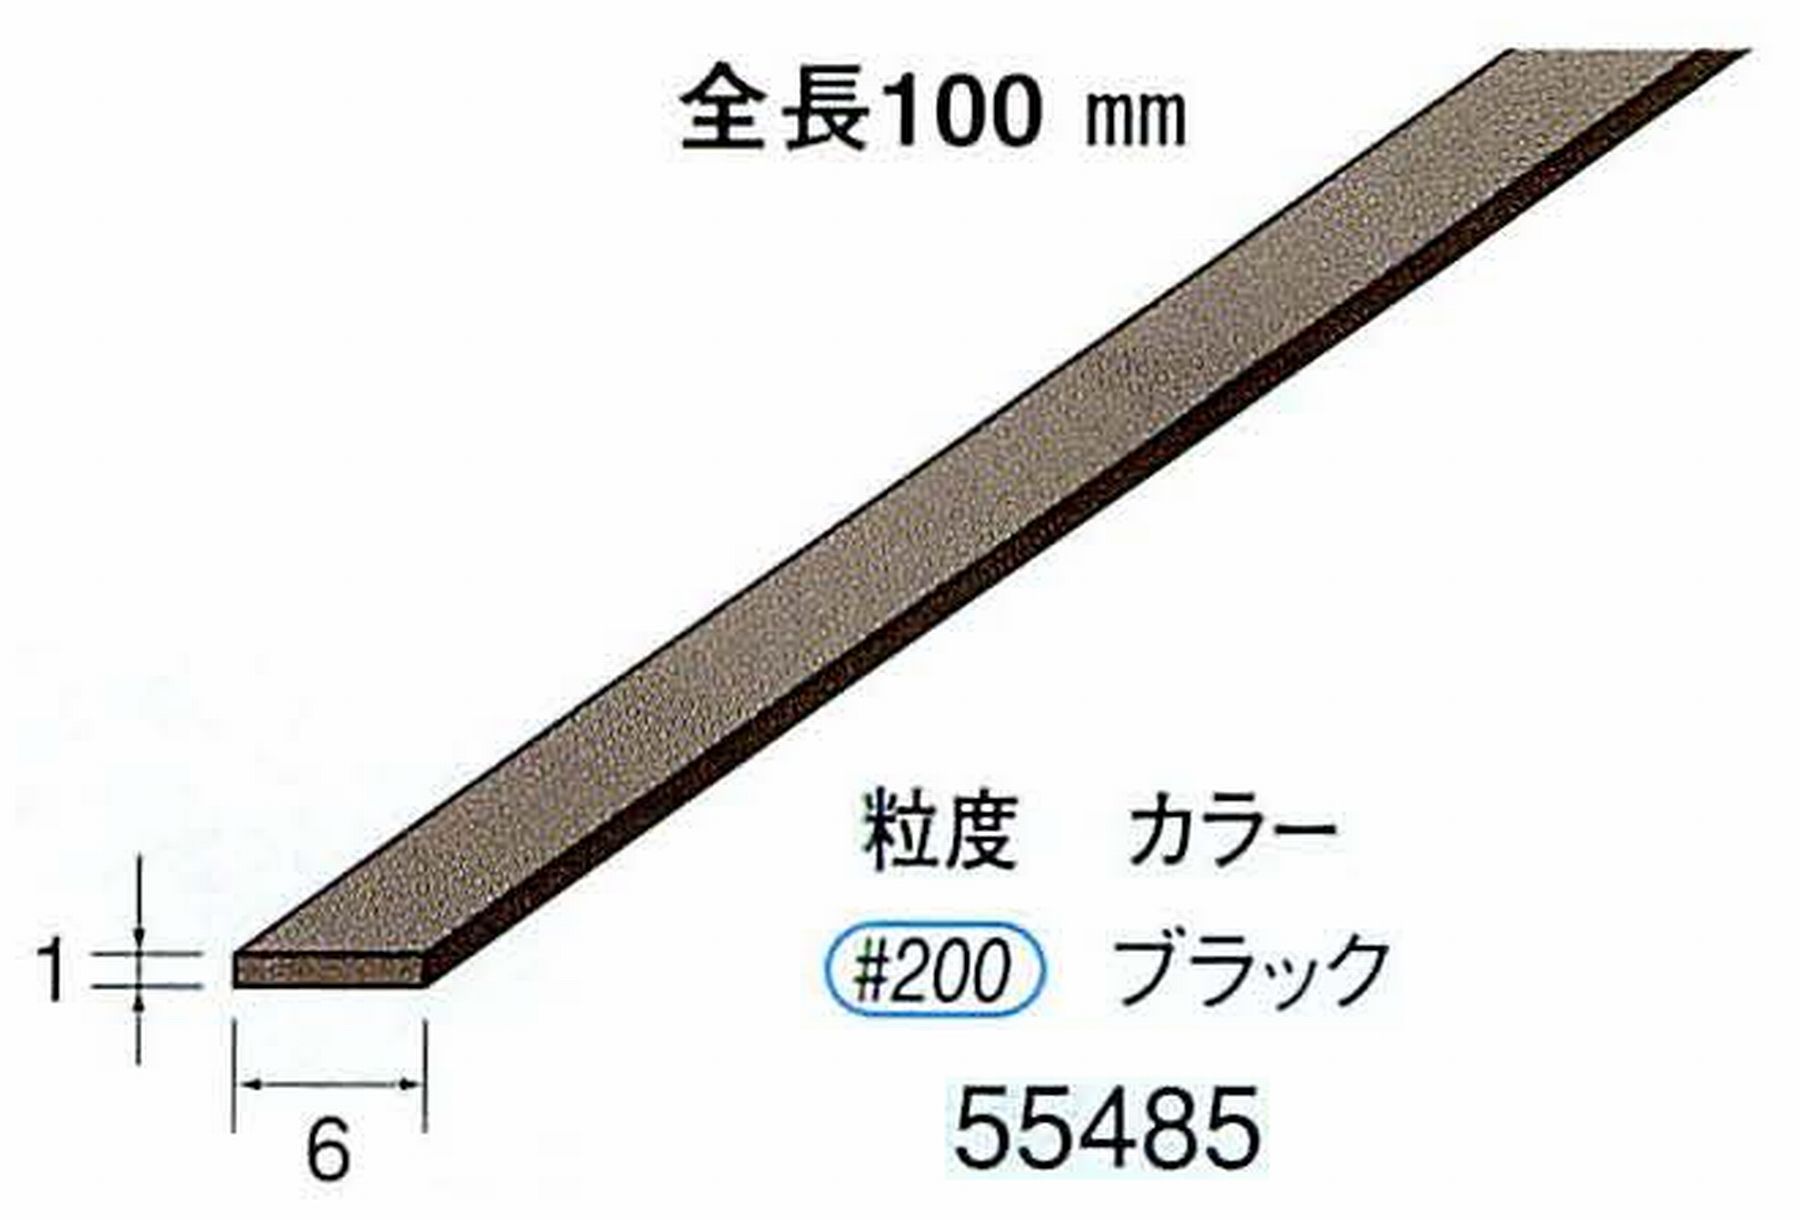 ナカニシ/NAKANISHI ダイヤモンドセラファイバー砥石 全長100mm ブラック 55485